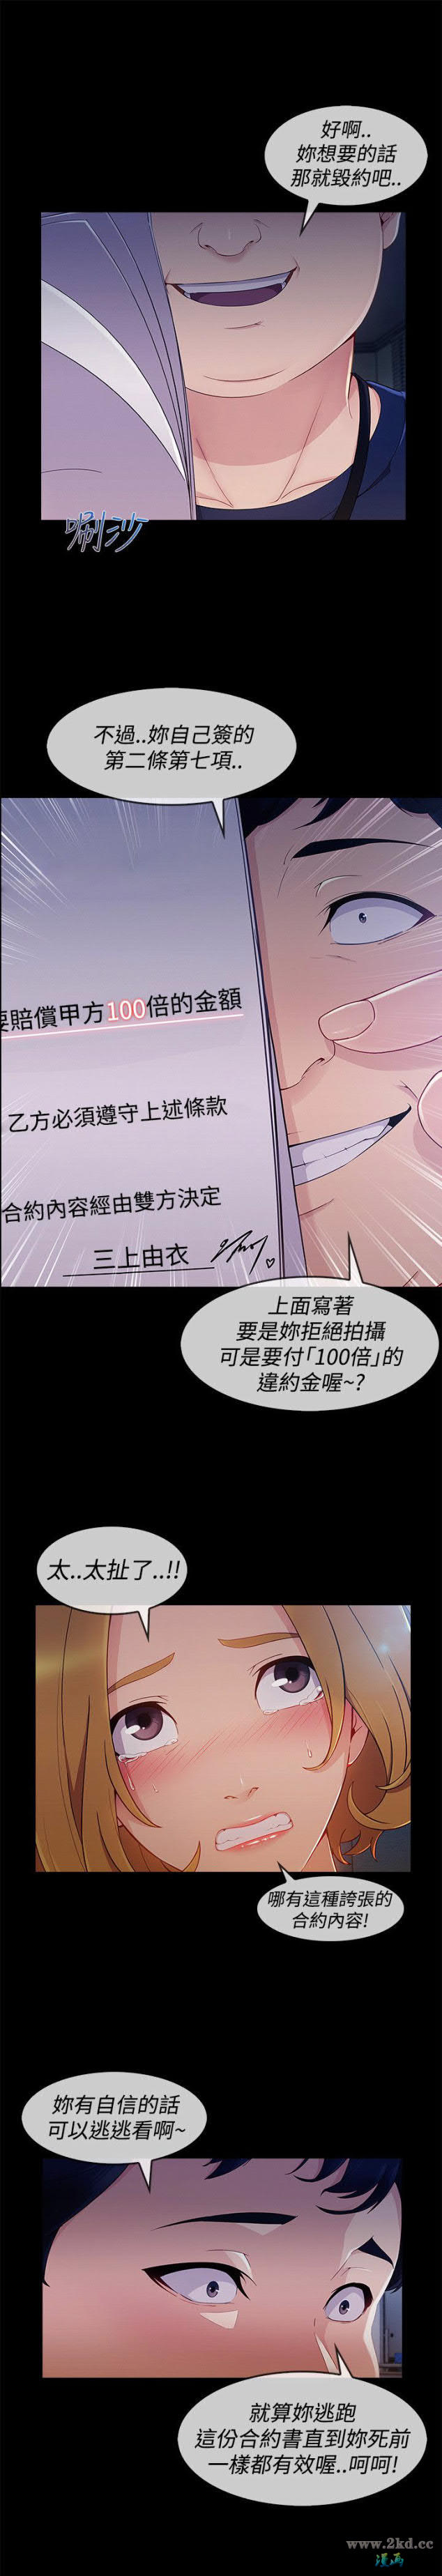 《淑女花苑》漫画 第3季 第11话